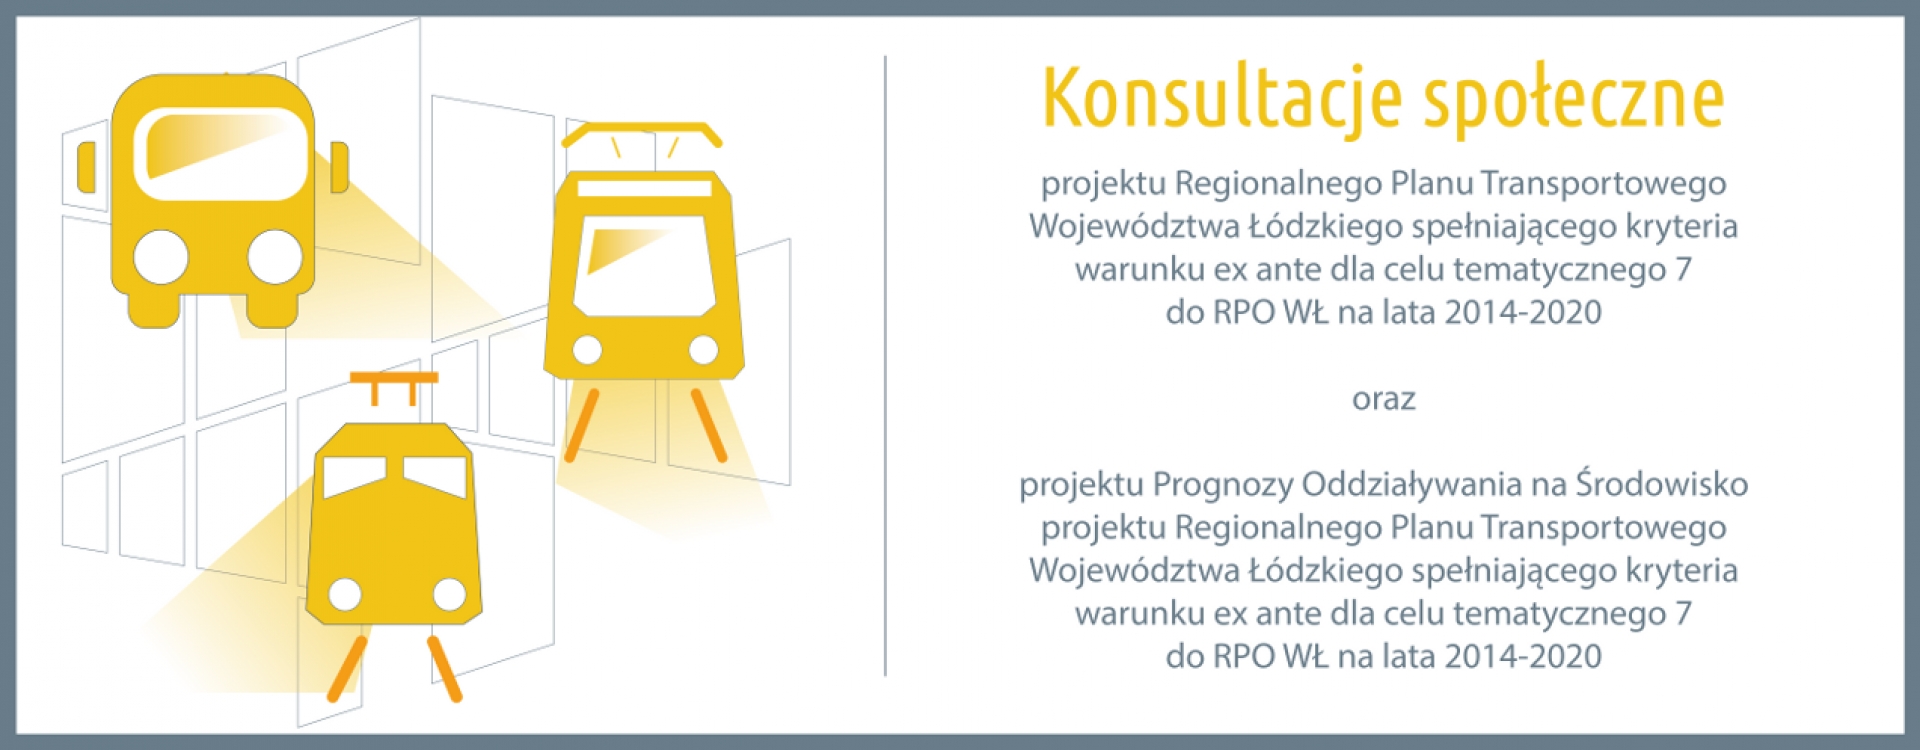 Konsultacje społeczne projektu Regionalnego Planu Transportowego Województwa Łódzkiego oraz projektu Prognozy Oddziaływania na Środowisko